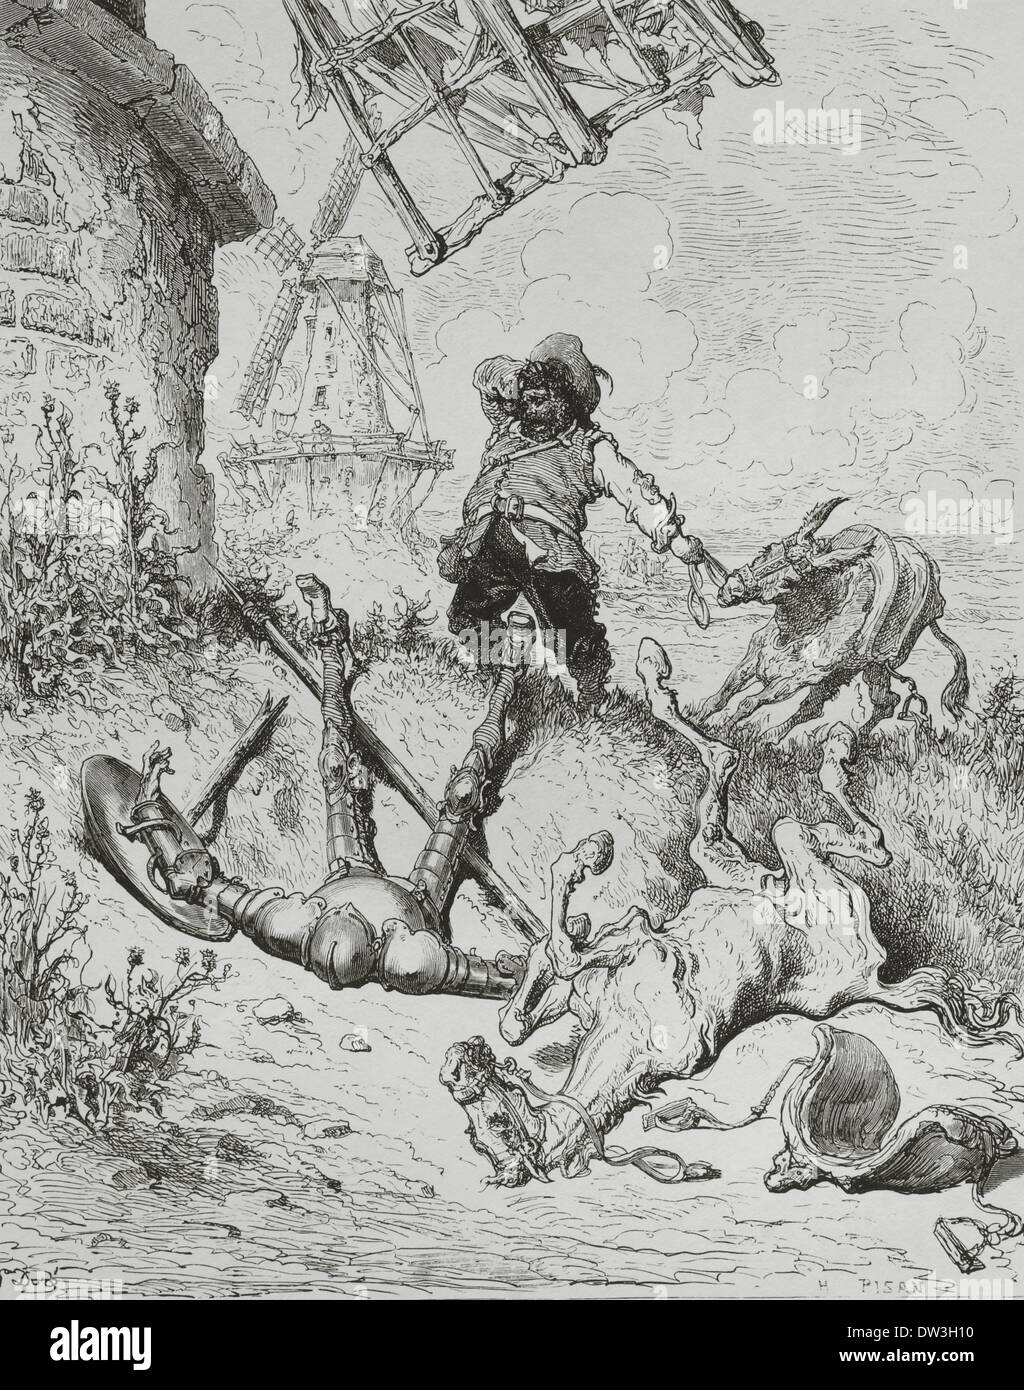 Don Quijote von Miguel de Cervantes. Sancho kommt Don Quijote zu Hilfe (Teil I, 8). Stich von Gustave Dore, 19. Jahrhundert. Stockfoto